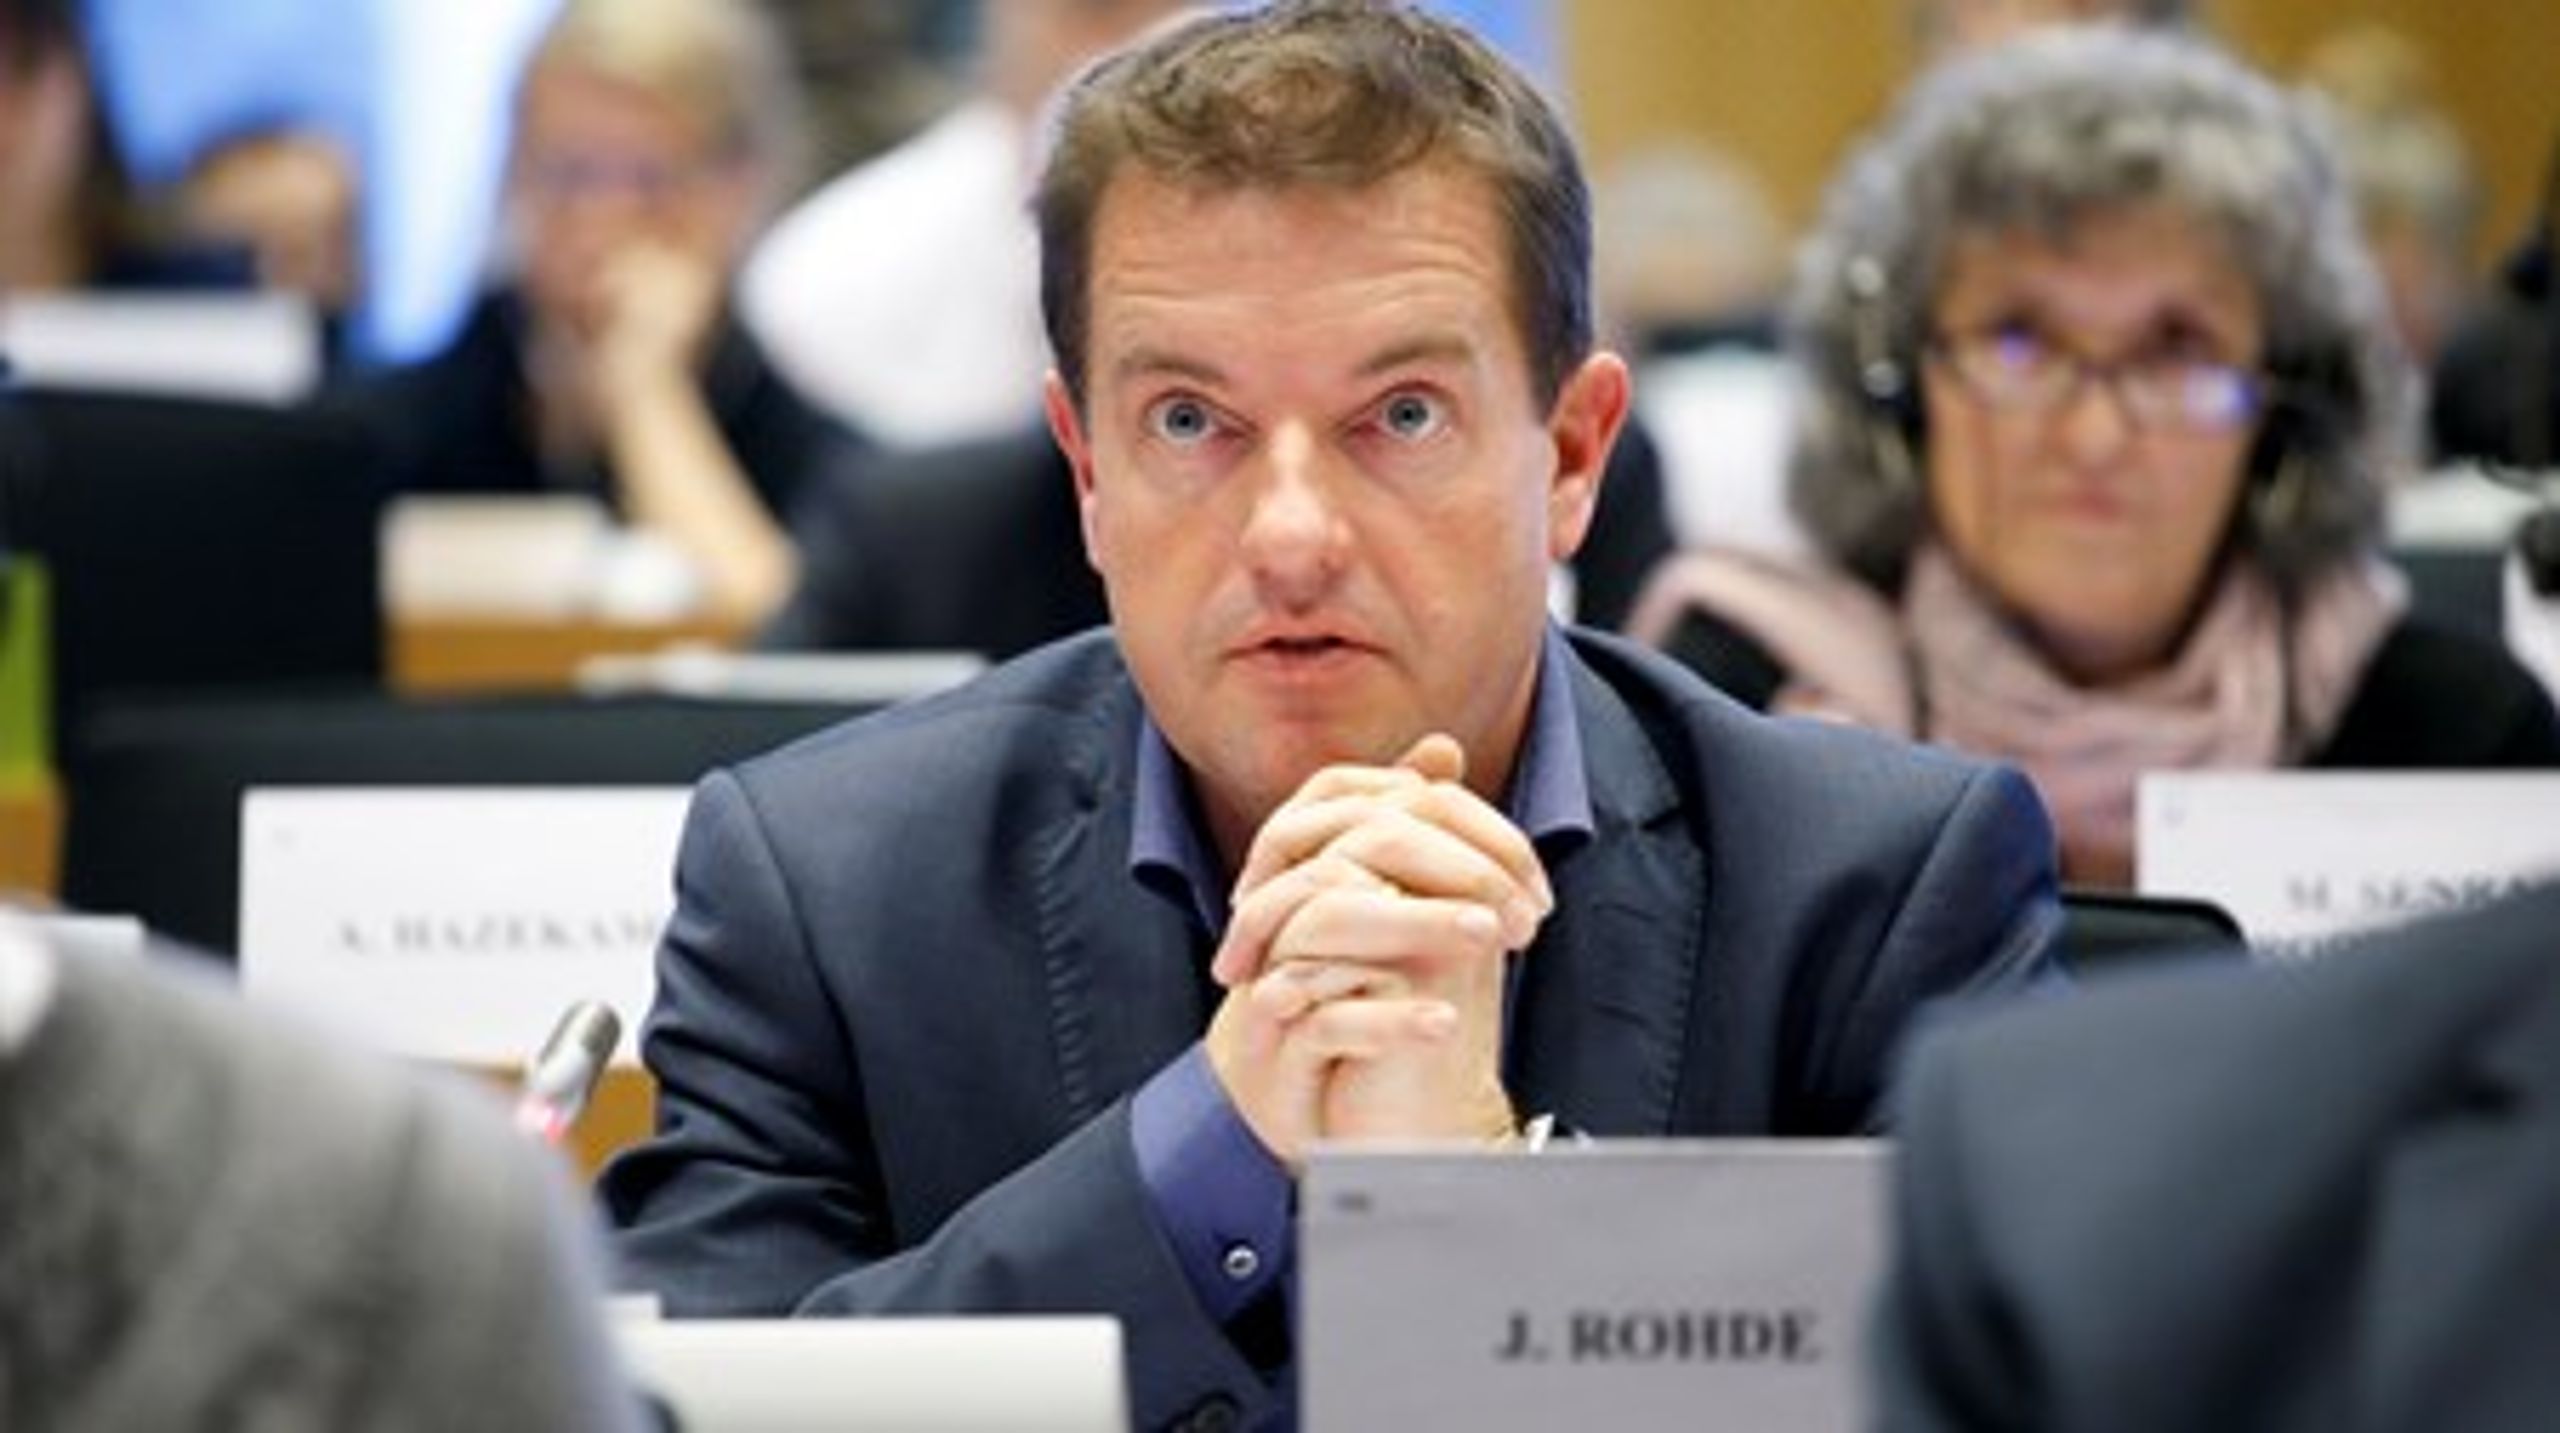 Jens Rohde i Parlamentets Landbrugsudvalg. Der bliver han siddende, også selv om han har skiftet parti.